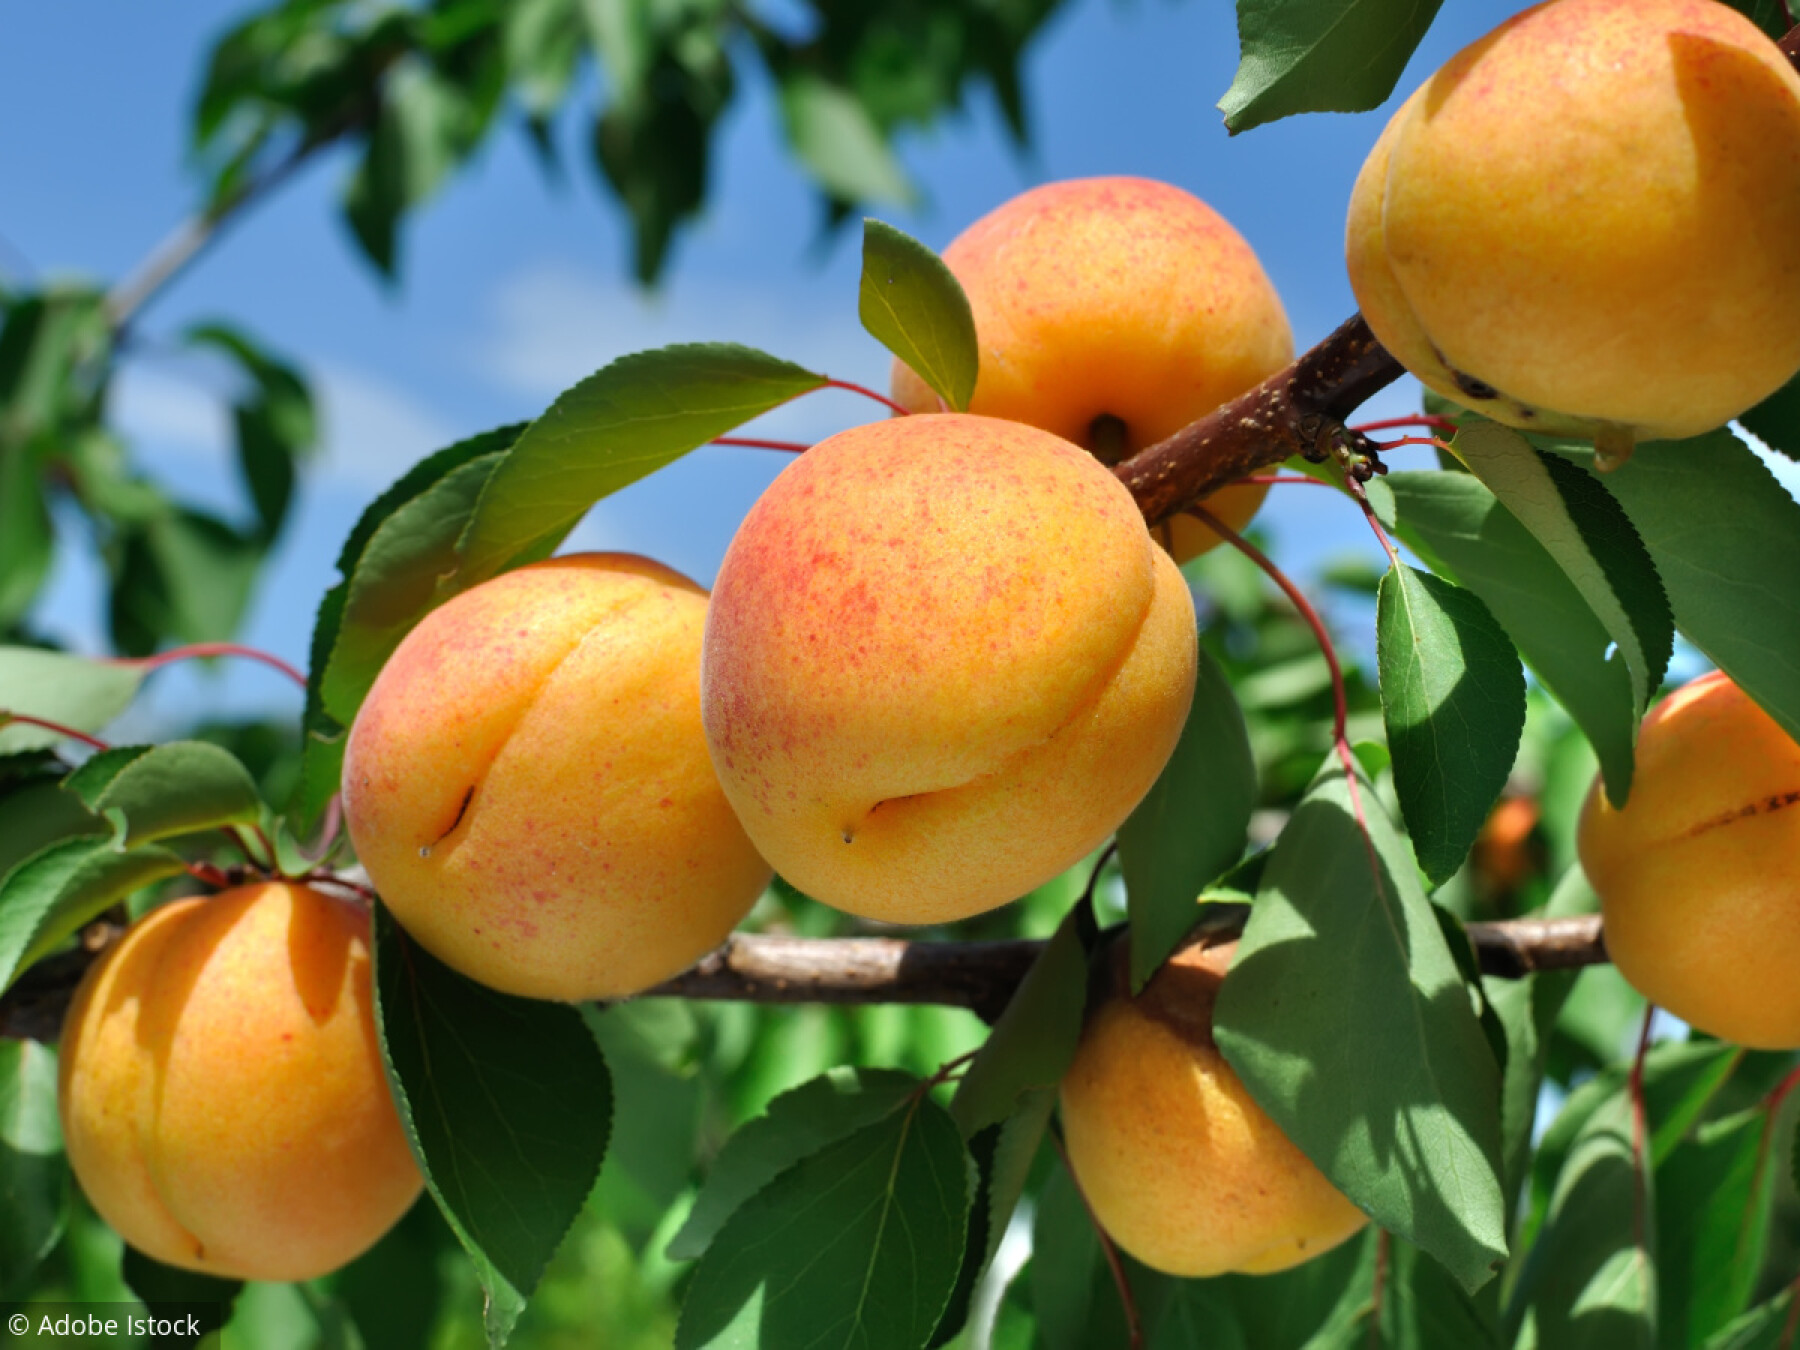 Abricotier, cerisier, framboisier… Les conseils pour de beaux arbres fruitiers